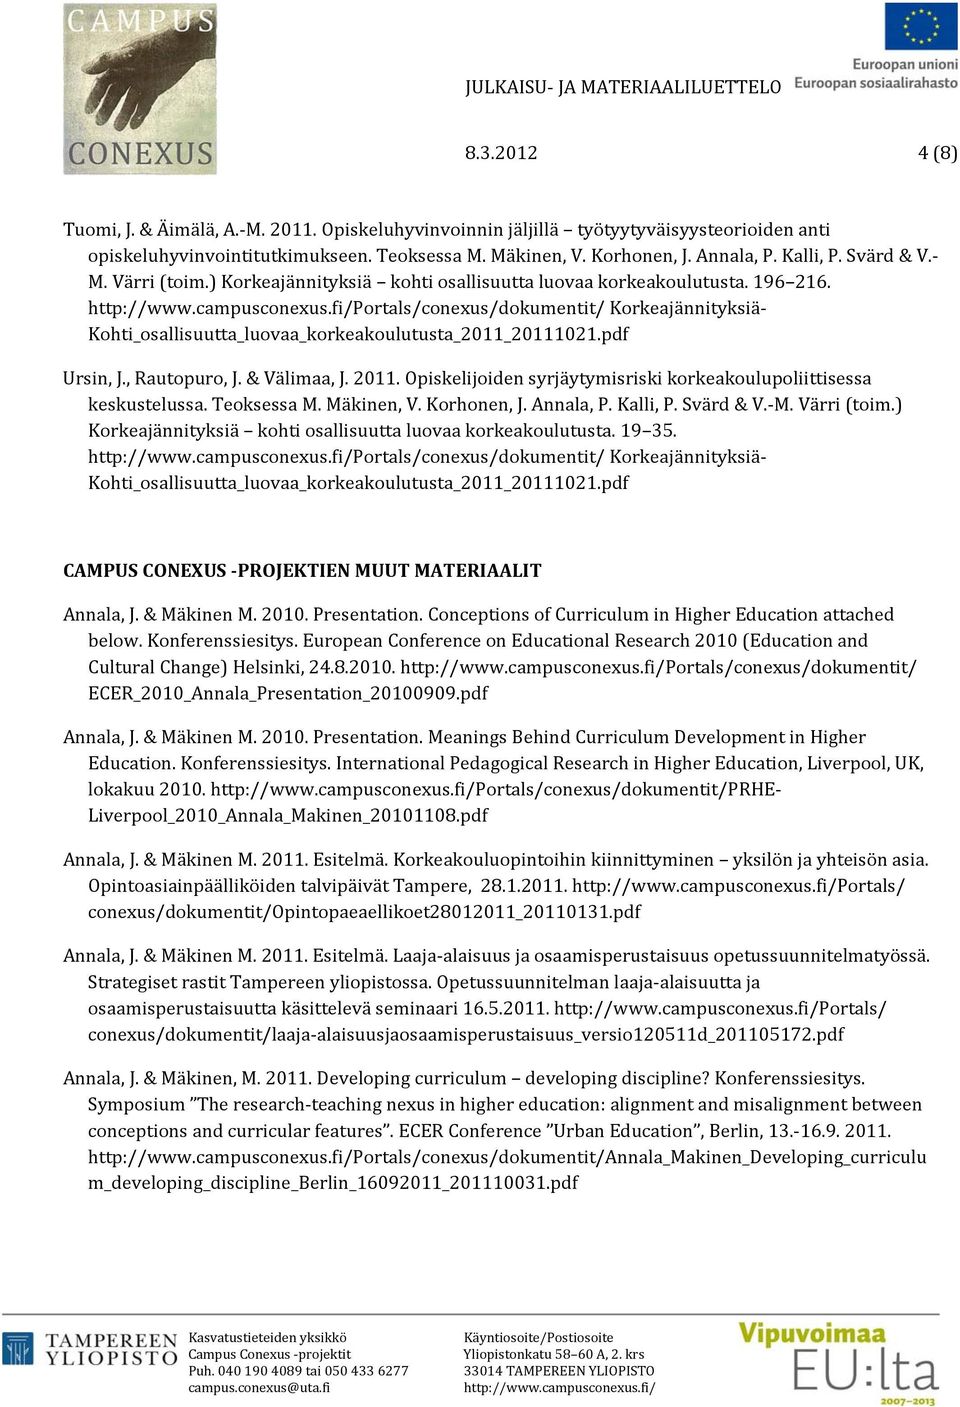 Opiskelijoiden syrjäytymisriski korkeakoulupoliittisessa keskustelussa. Teoksessa M. Mäkinen, V. Korhonen, J. Annala, P. Kalli, P. Svärd & V. M. Värri (toim.